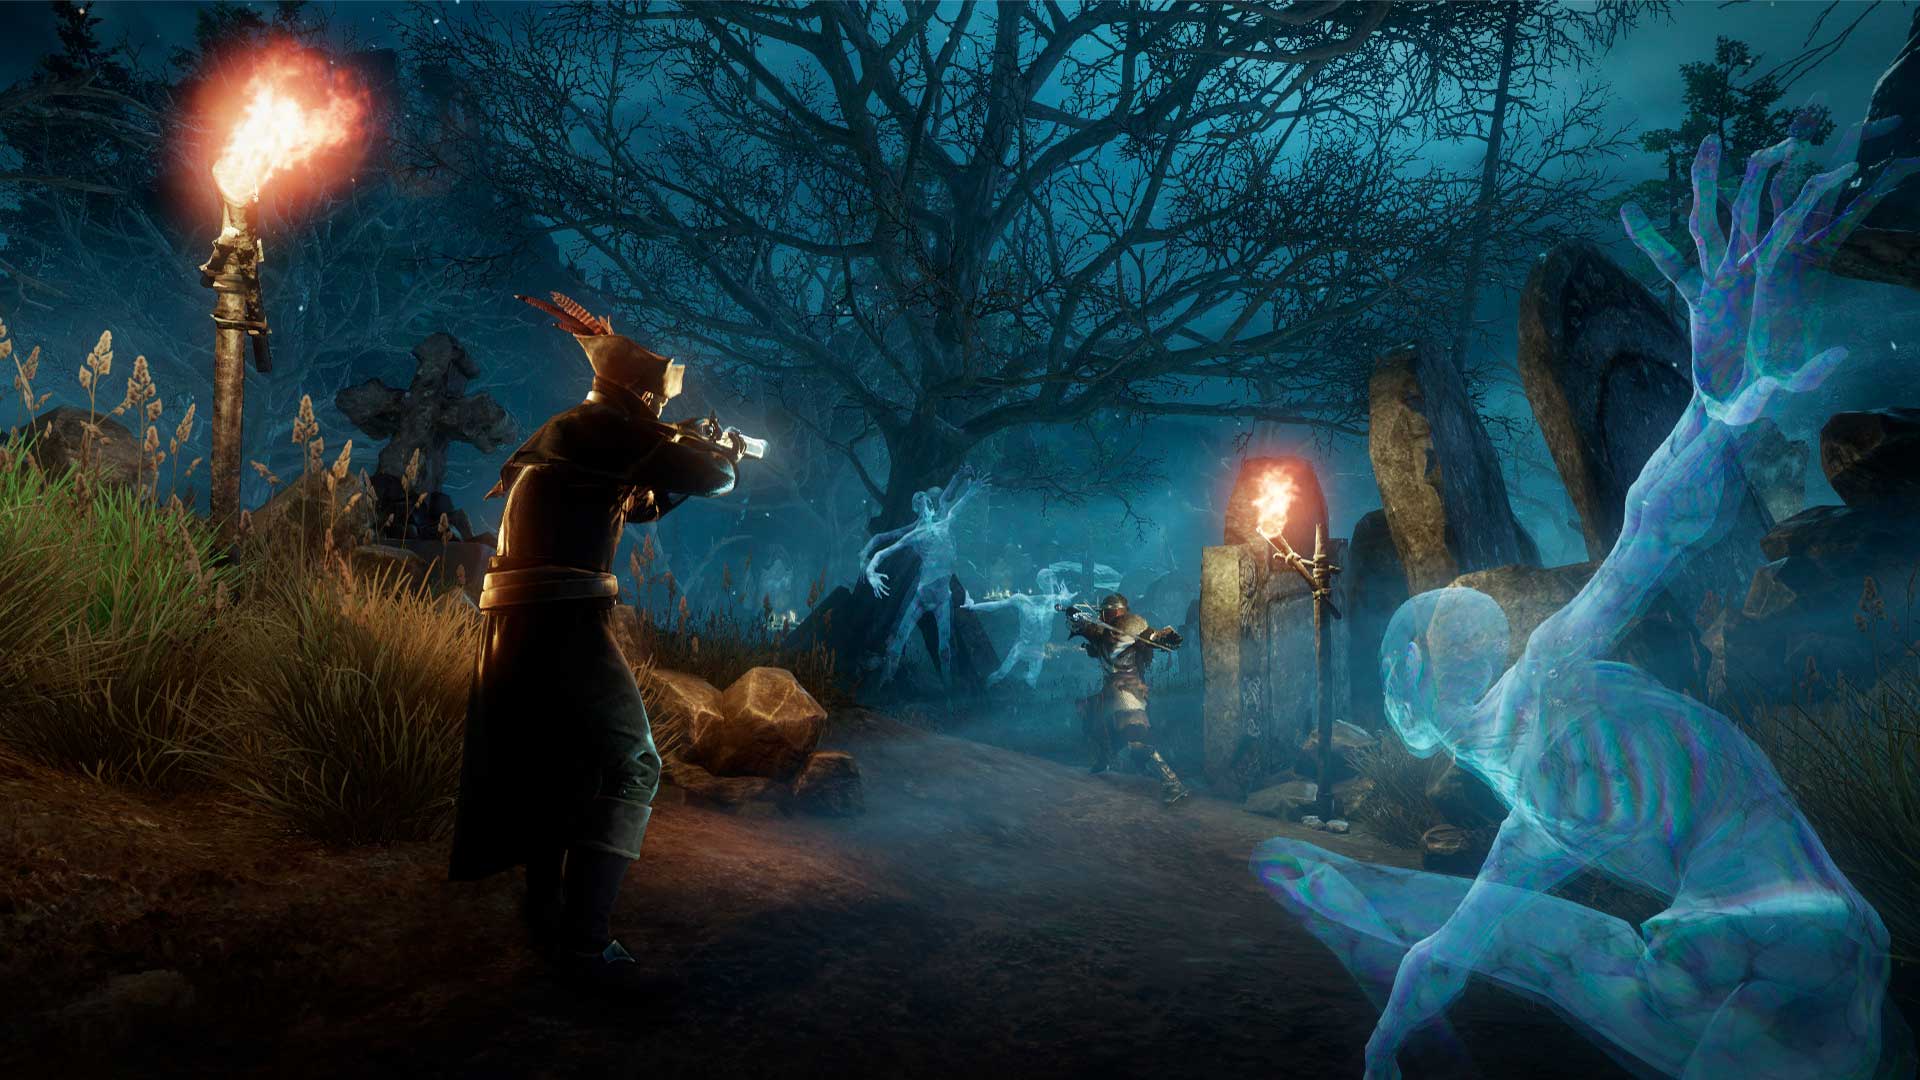 En bild av nya världsspelare som skjuter musketter i en kyrkogård